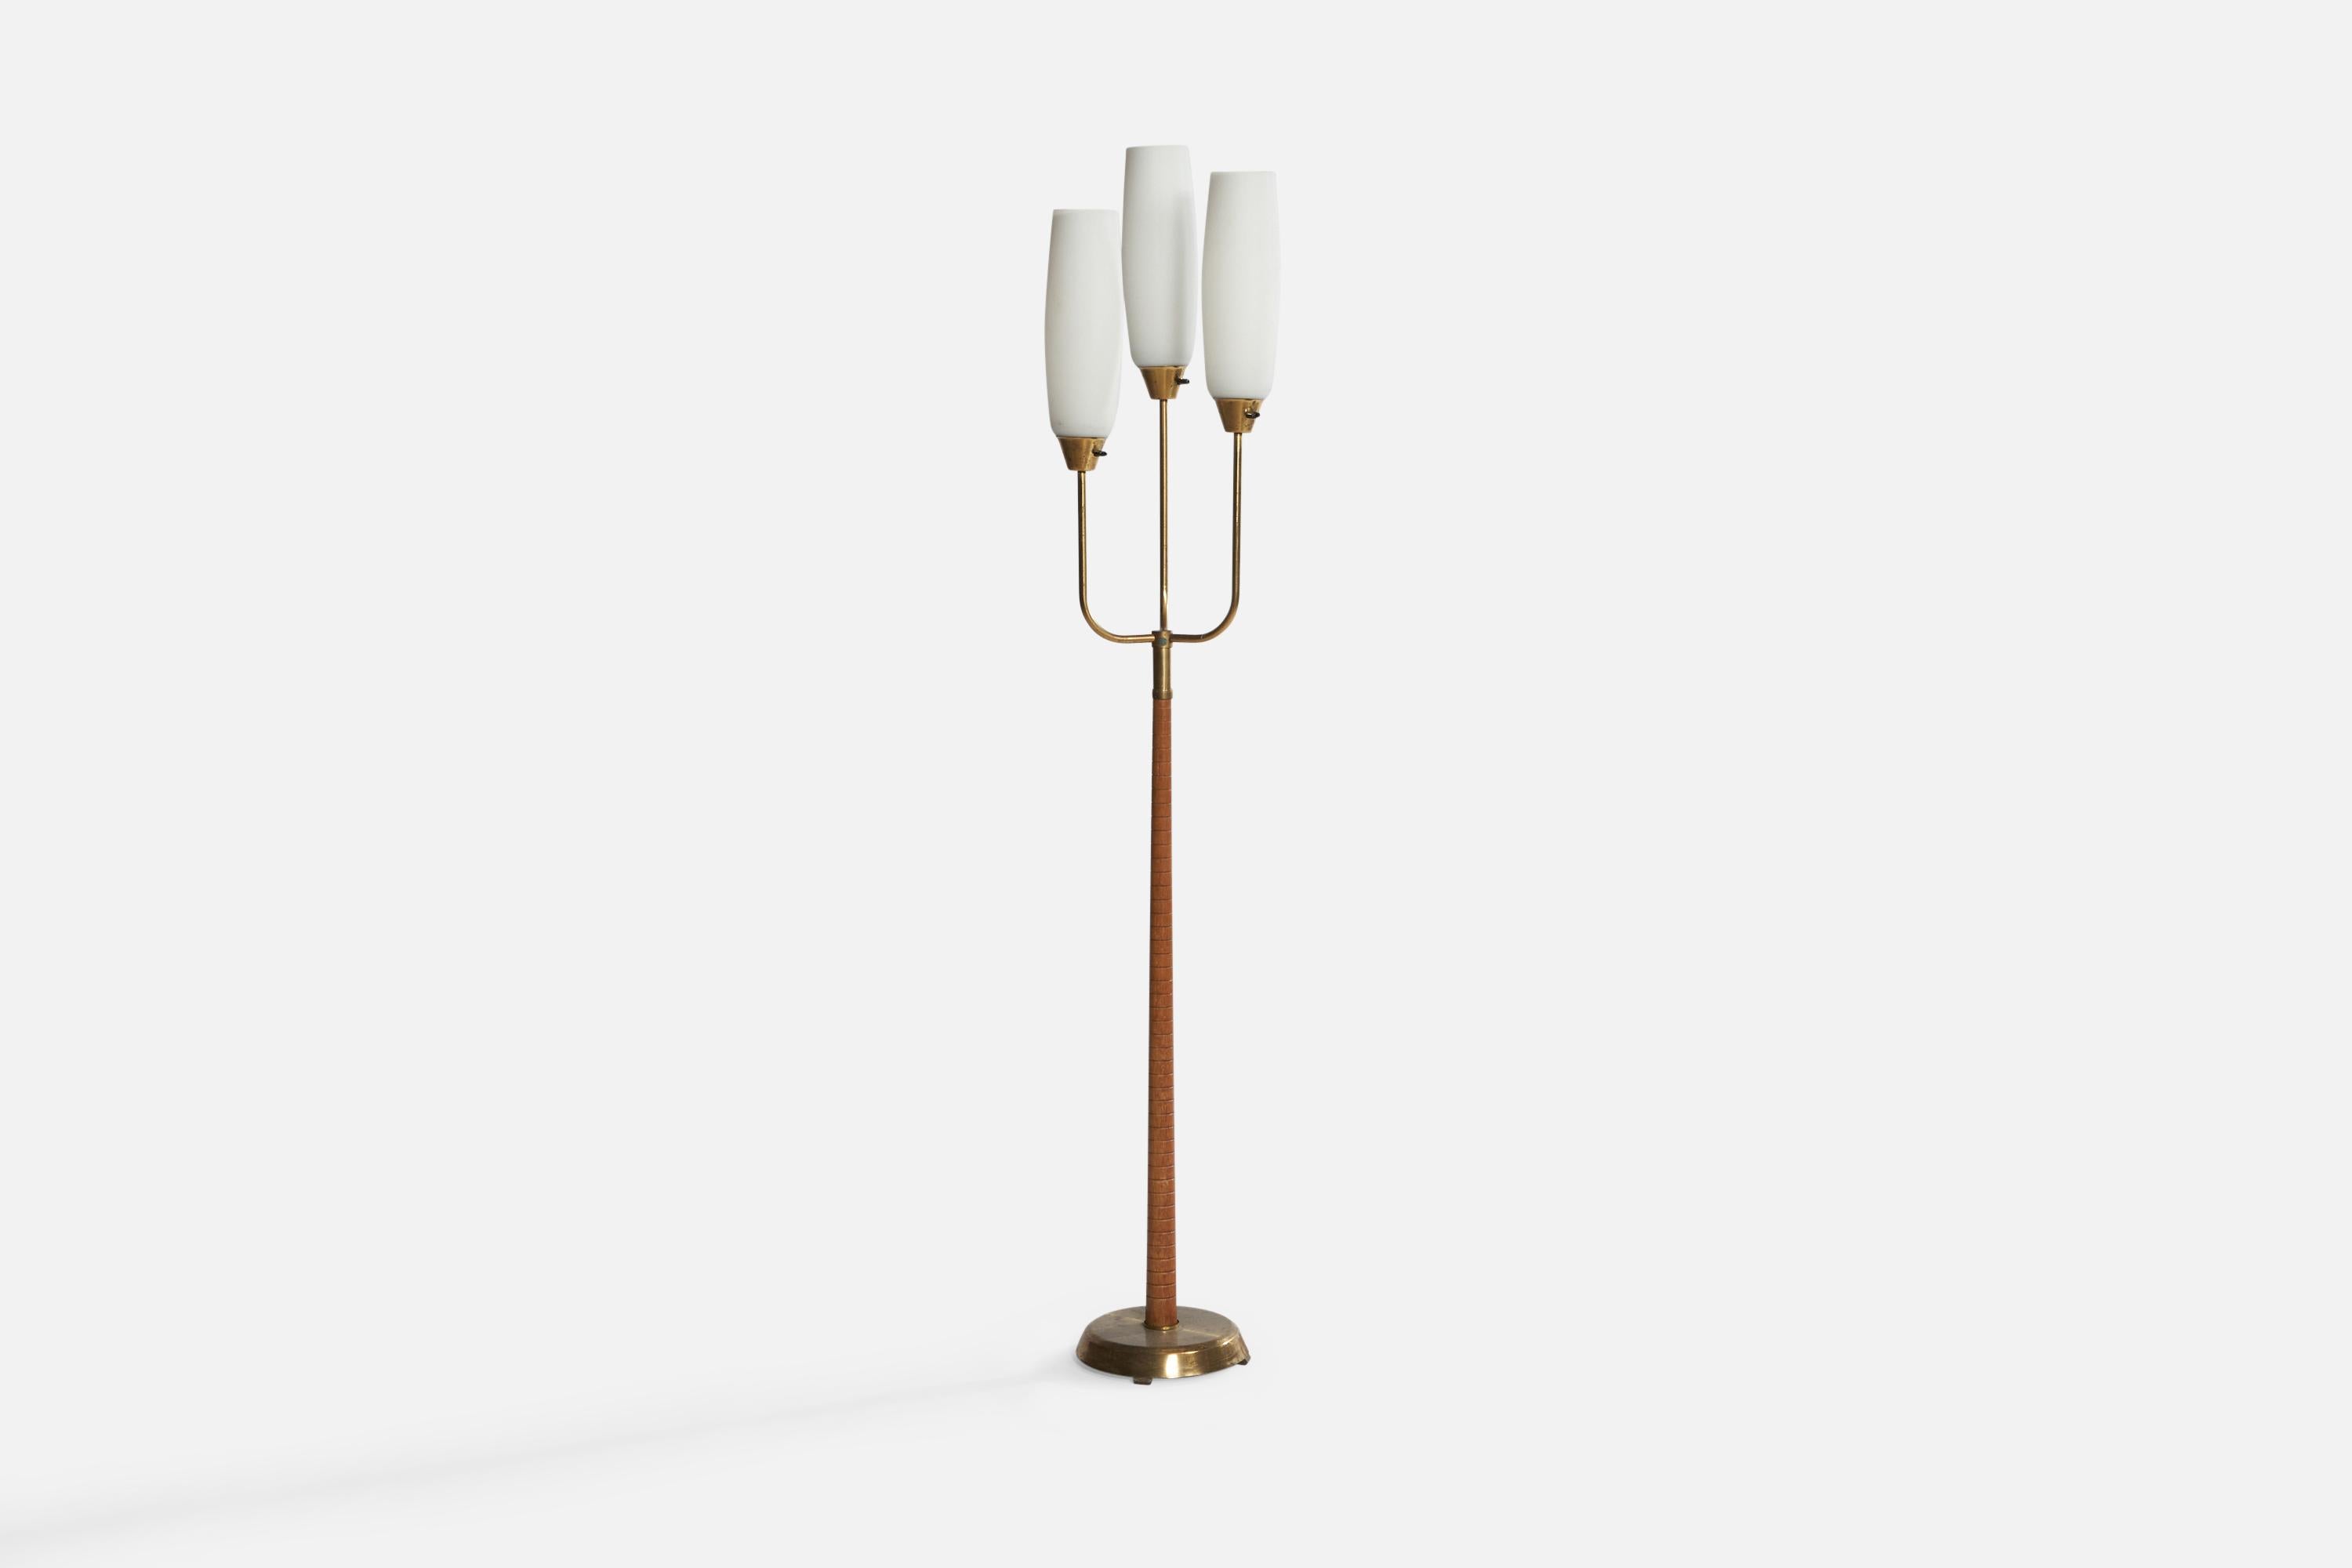 Lampadaire à trois branches en laiton, orme et verre opalin, conçu et produit par GEMI, Suède, années 1940.

Dimensions totales (pouces) : 70,75